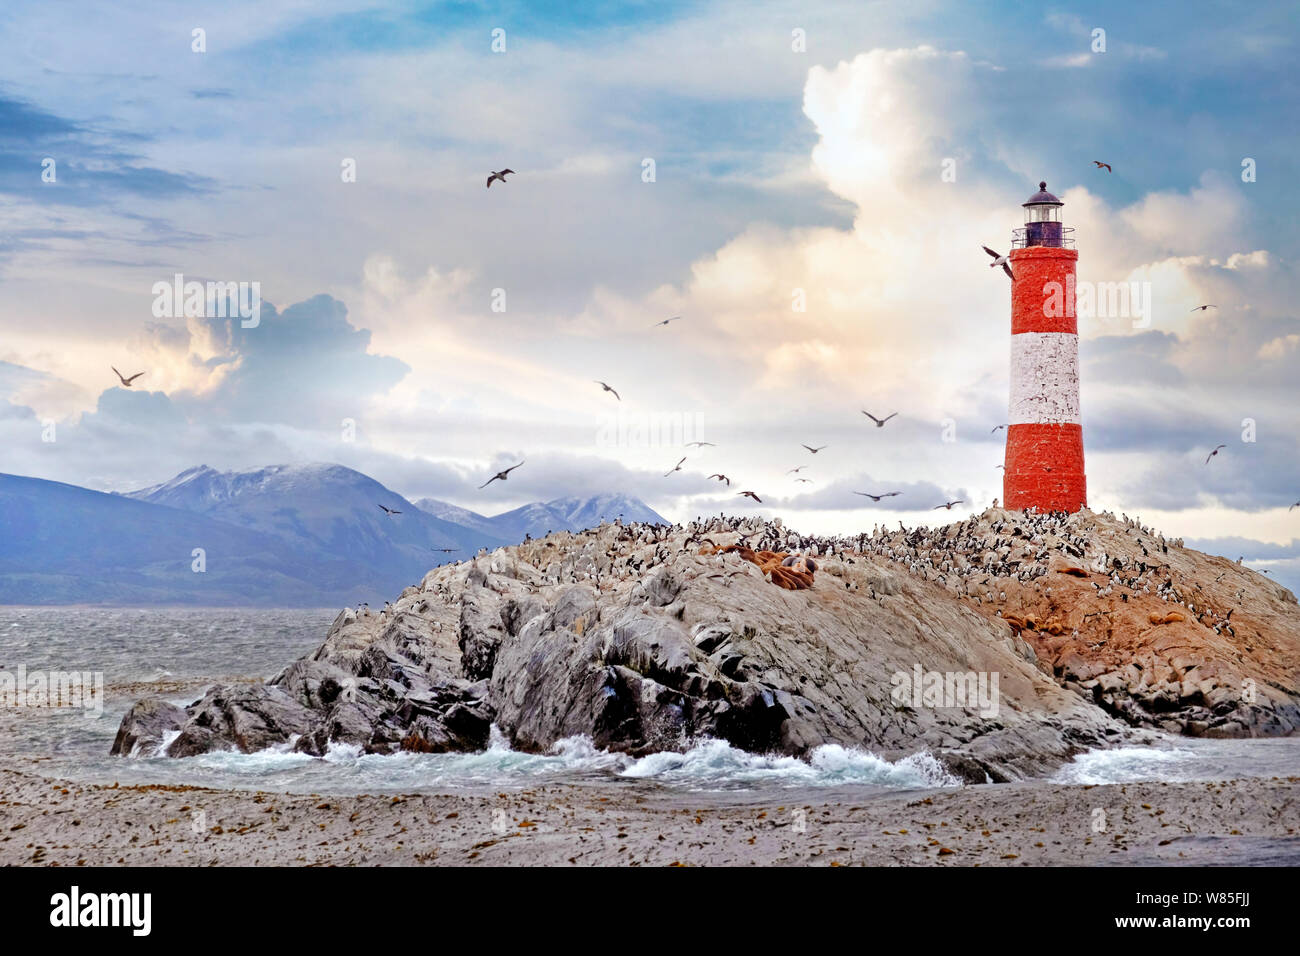 Panormaic Blick auf die kriegerische Berge und Leuchtturm Les Eclaireurs, liegen auf einer Insel, wo Seelöwen und cormorans Ruhe, umgeben von einem warmen Sonne Stockfoto